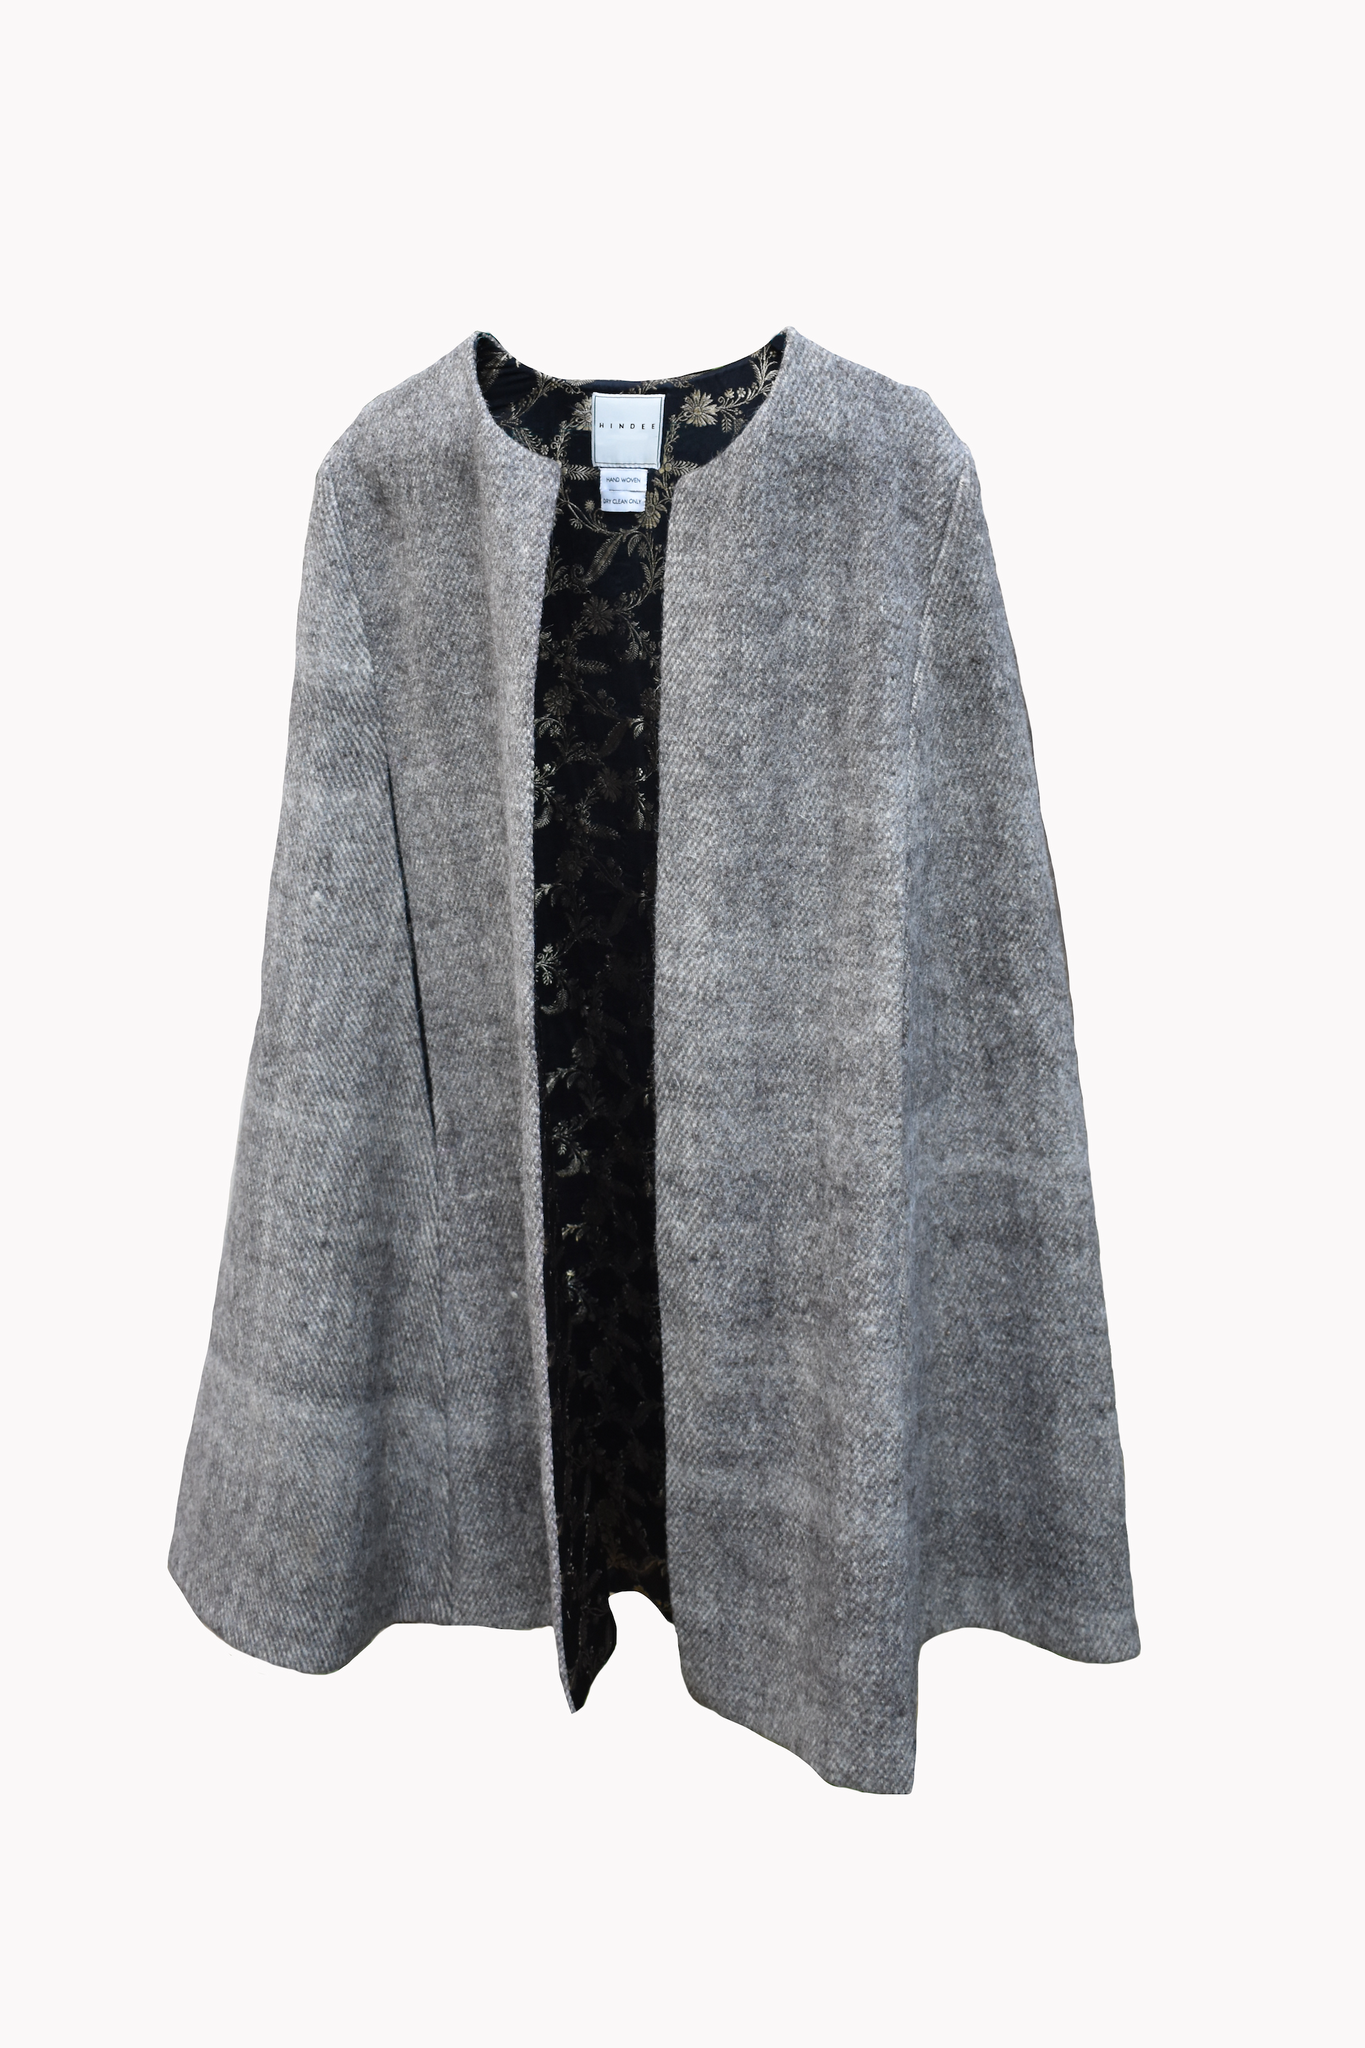 Grey Tweed Cape with Black Brocade lining